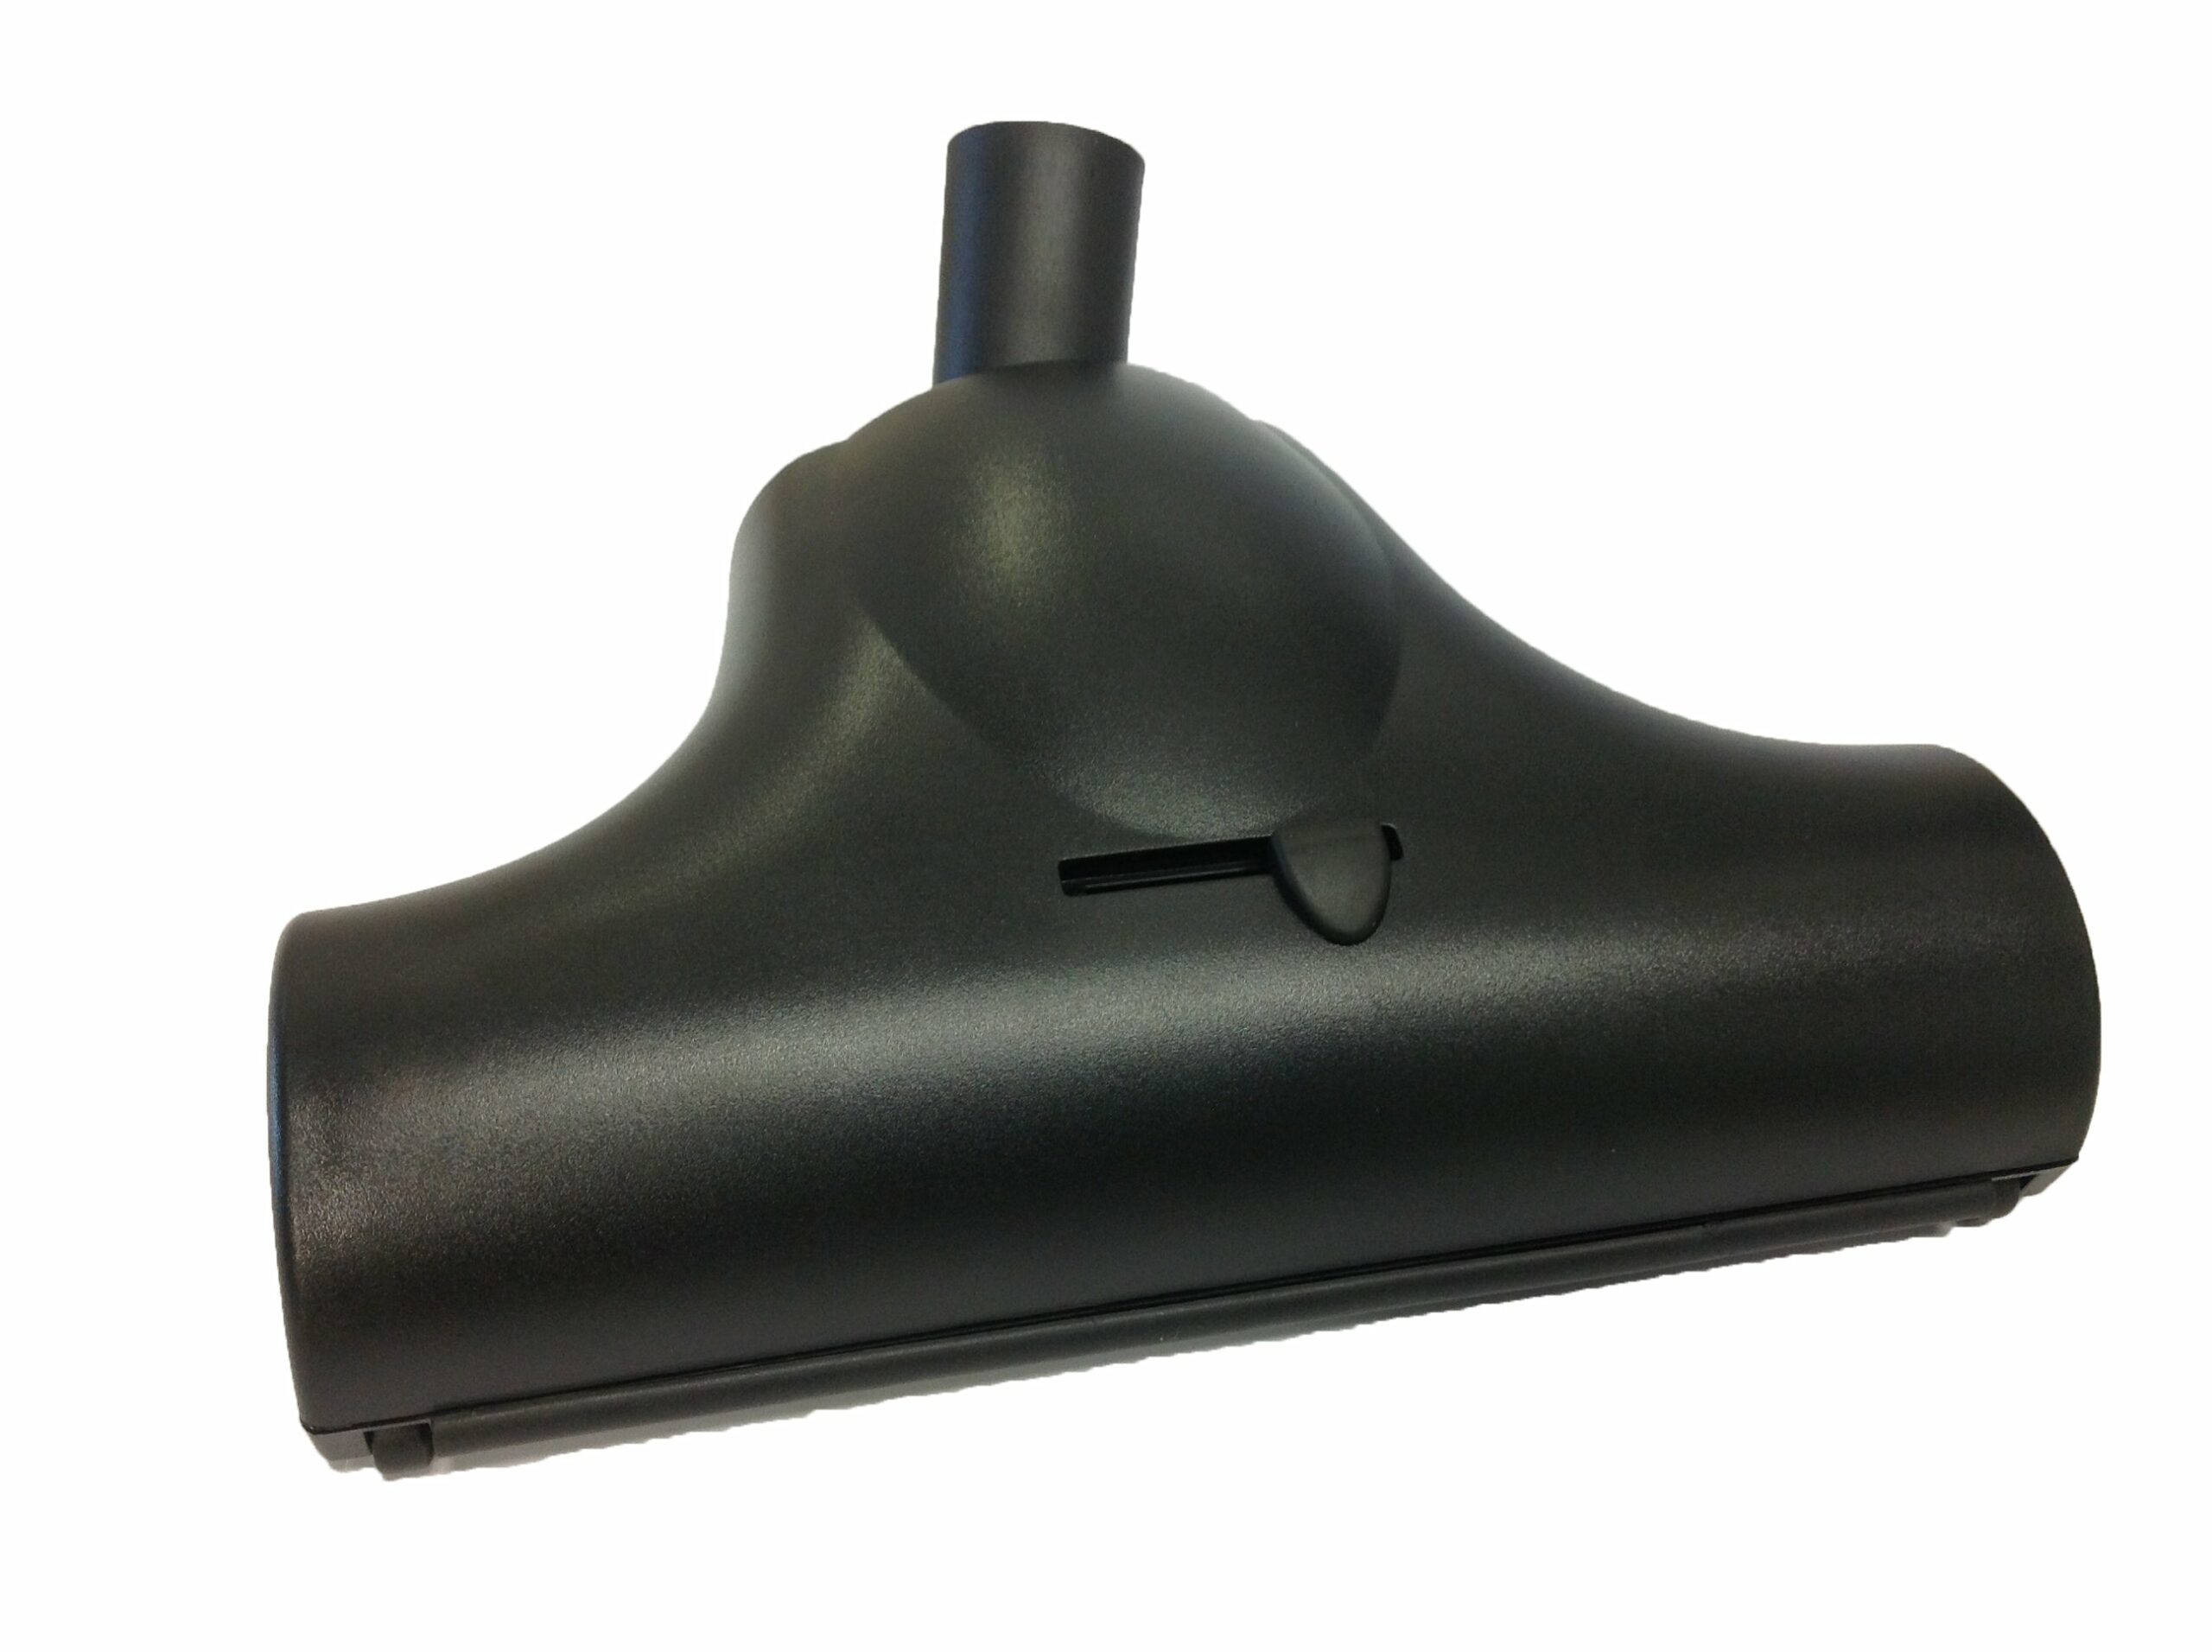 FILTA Premium Turbo Brush Floor Tool 32Mm – Black (80195)